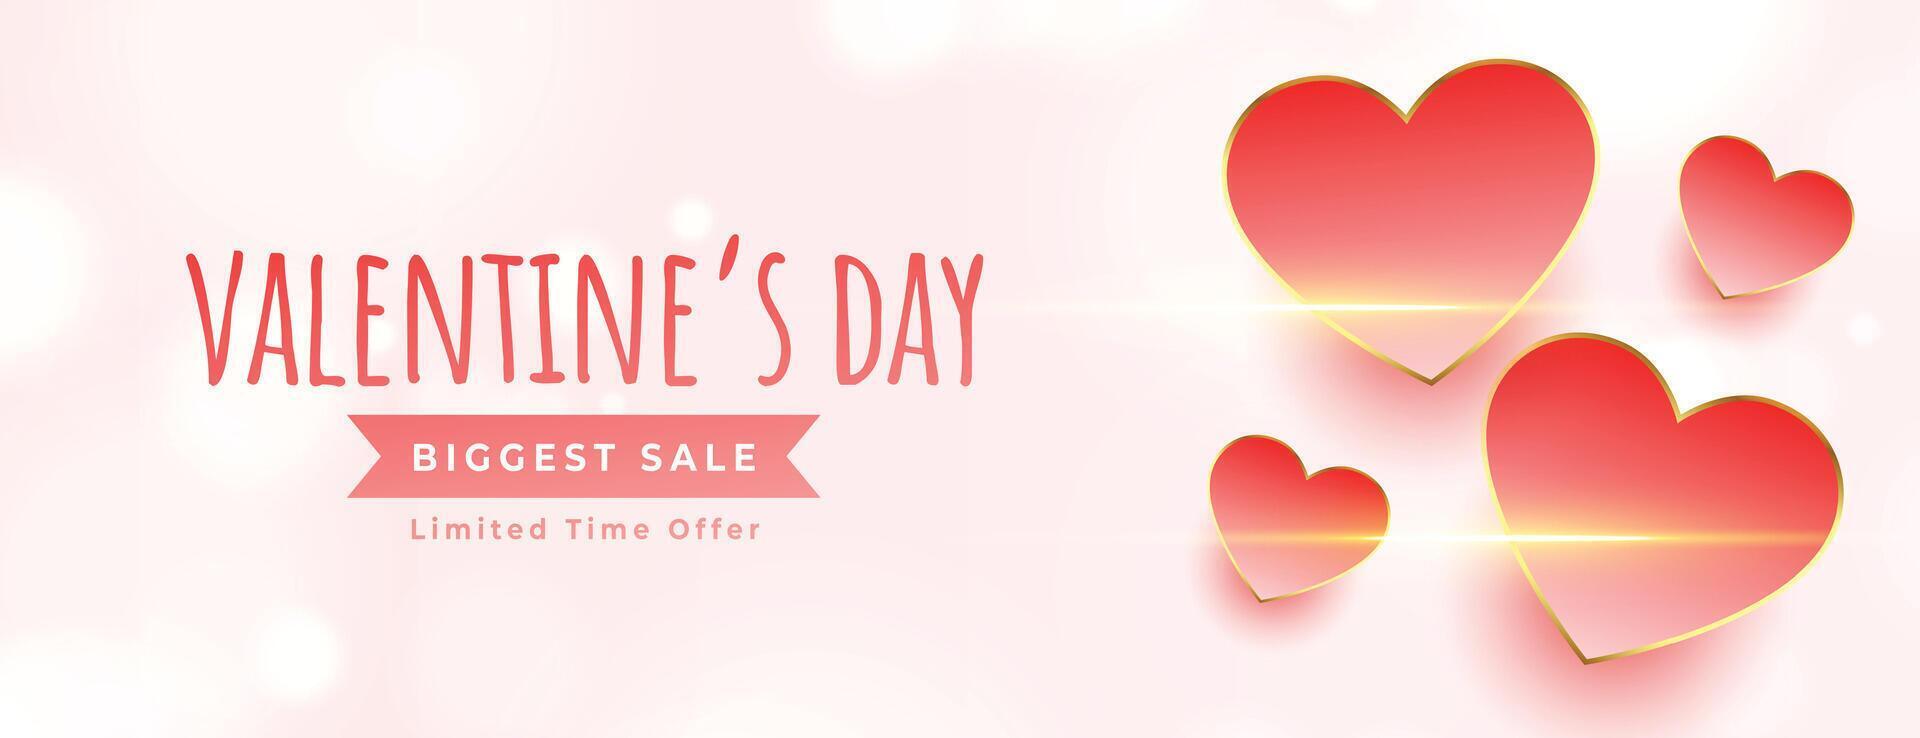 Valentinsgrüße Tag groß Verkauf mit Liebe Herzen und Licht bewirken vektor